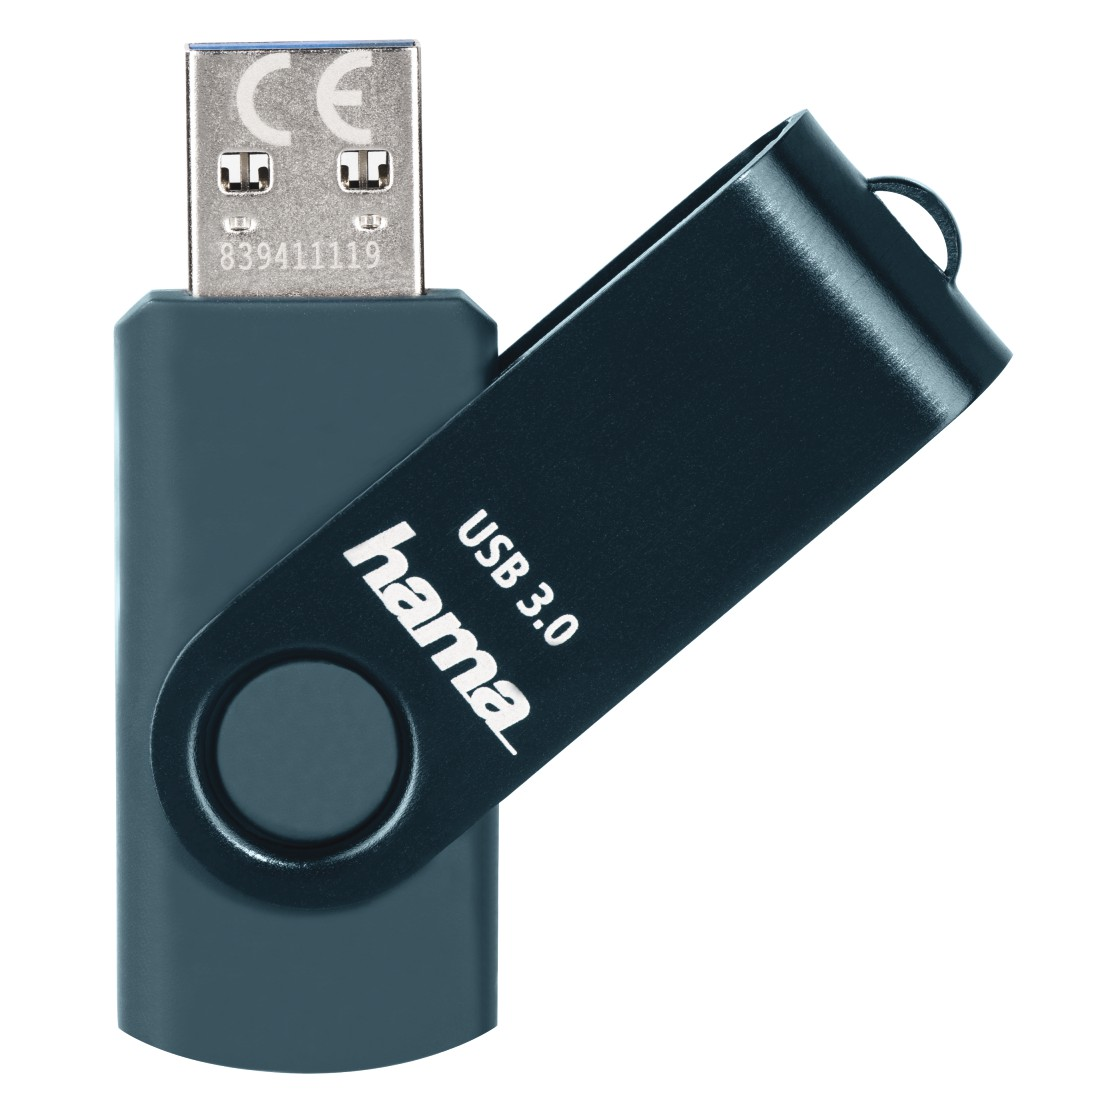 HAMA Rotate USB-Stick, 64 Blau Petrol MB/s, 70 GB